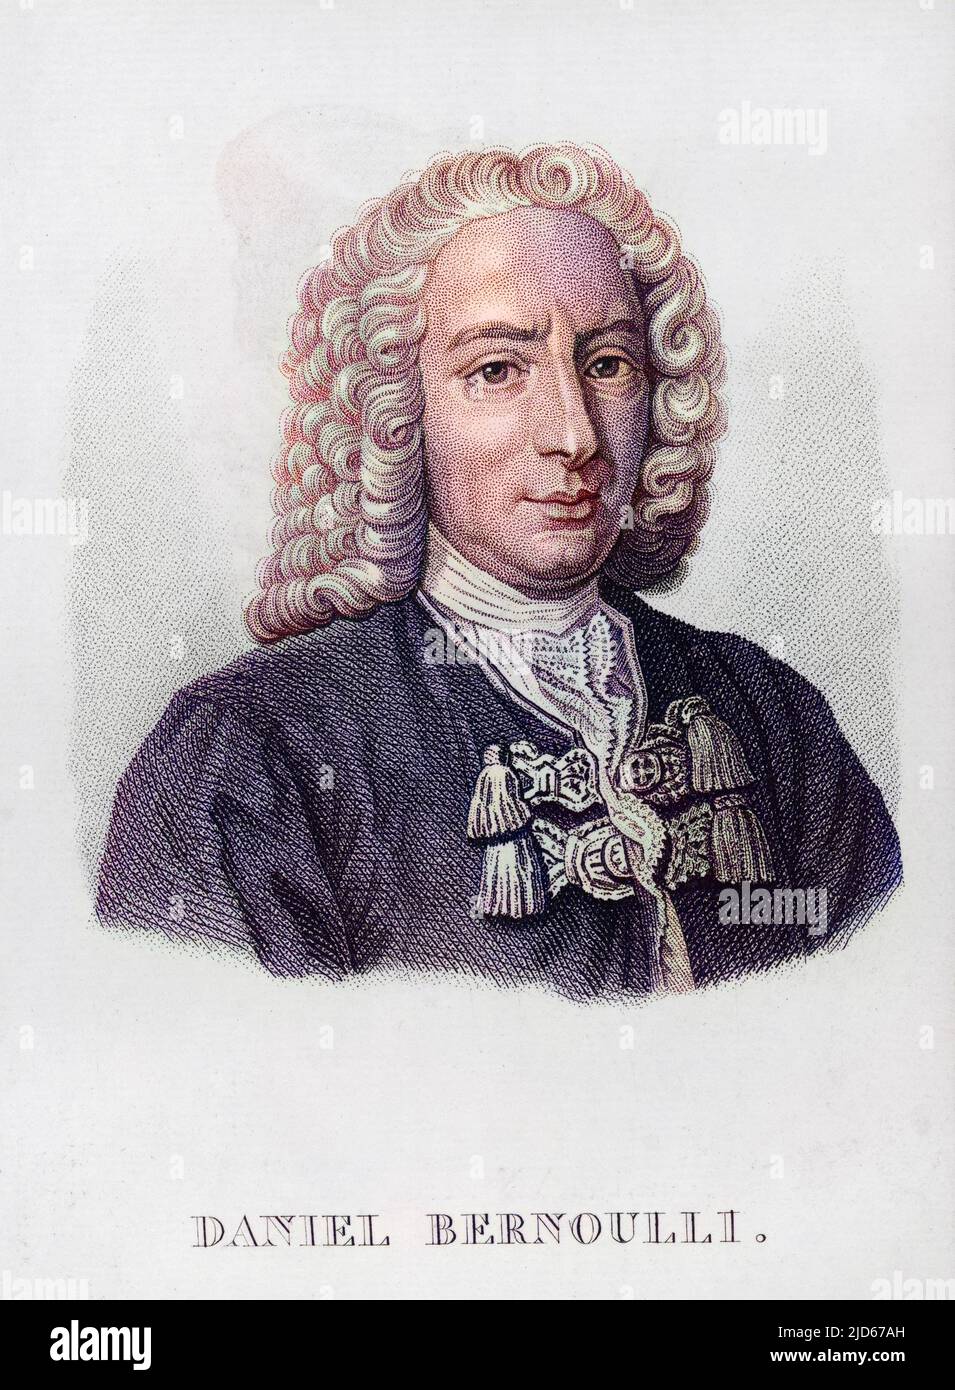 DANIEL BERNOUILLI (1700 - 1783), profesor suizo de matemáticas en San Petersburgo y de anatomía, botánica y física y luego de filosofía en la Universidad de Basilea. Versión coloreada de : 10016167 Foto de stock